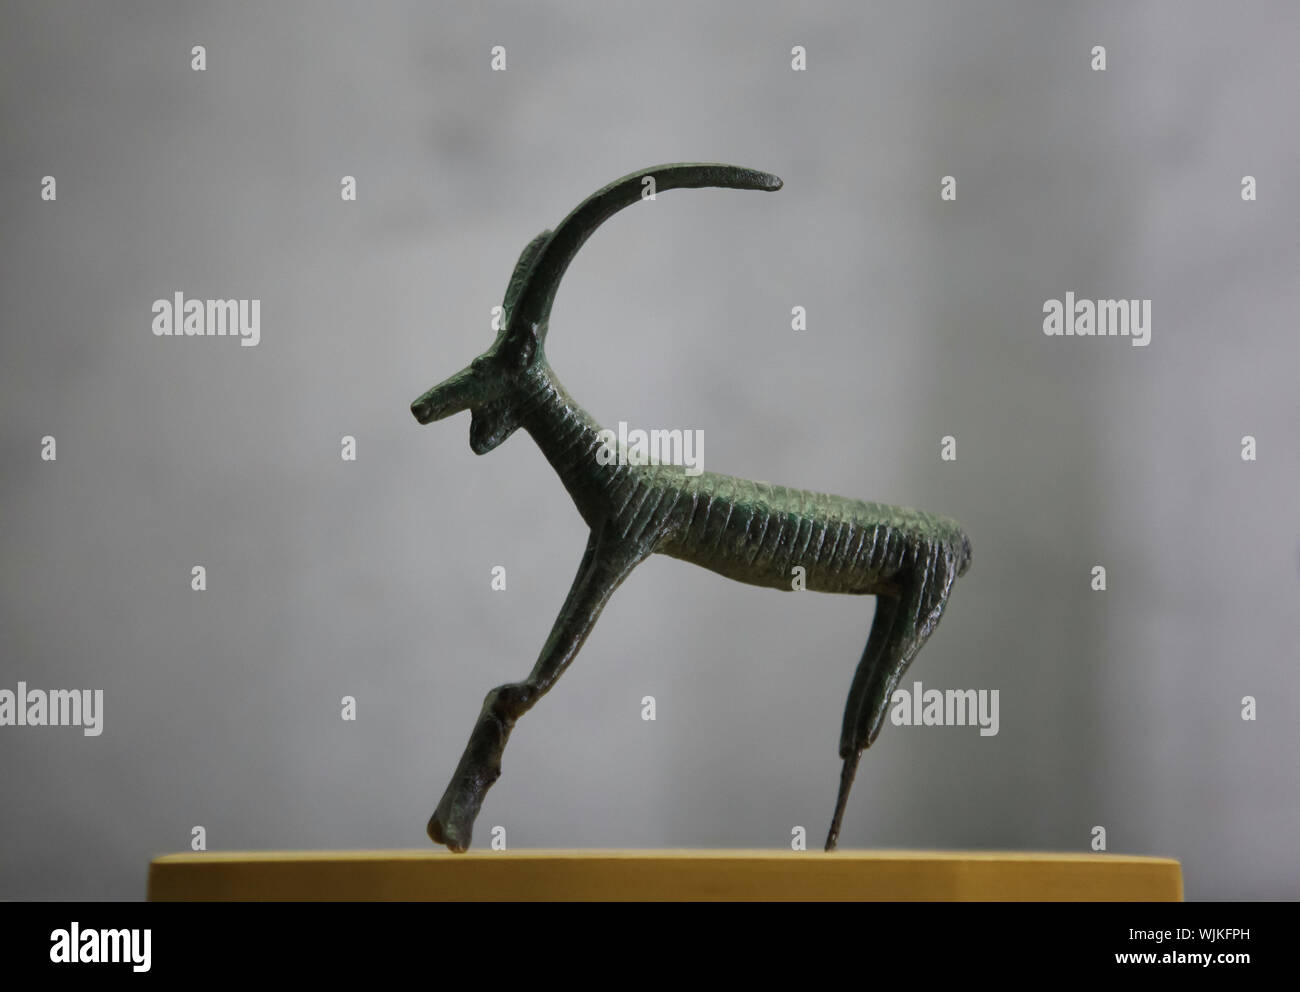 Alpensteinbock (Capra ibex) oder Pyrenäen ibex (Capra PYRENAICA PYRENAICA). Iberische, Keltische oder etruskischen Statuette auf Anzeige im Museum der Schönen Künste (Musée des Beaux-Arts de Lyon) in Lyon, Frankreich. Stockfoto